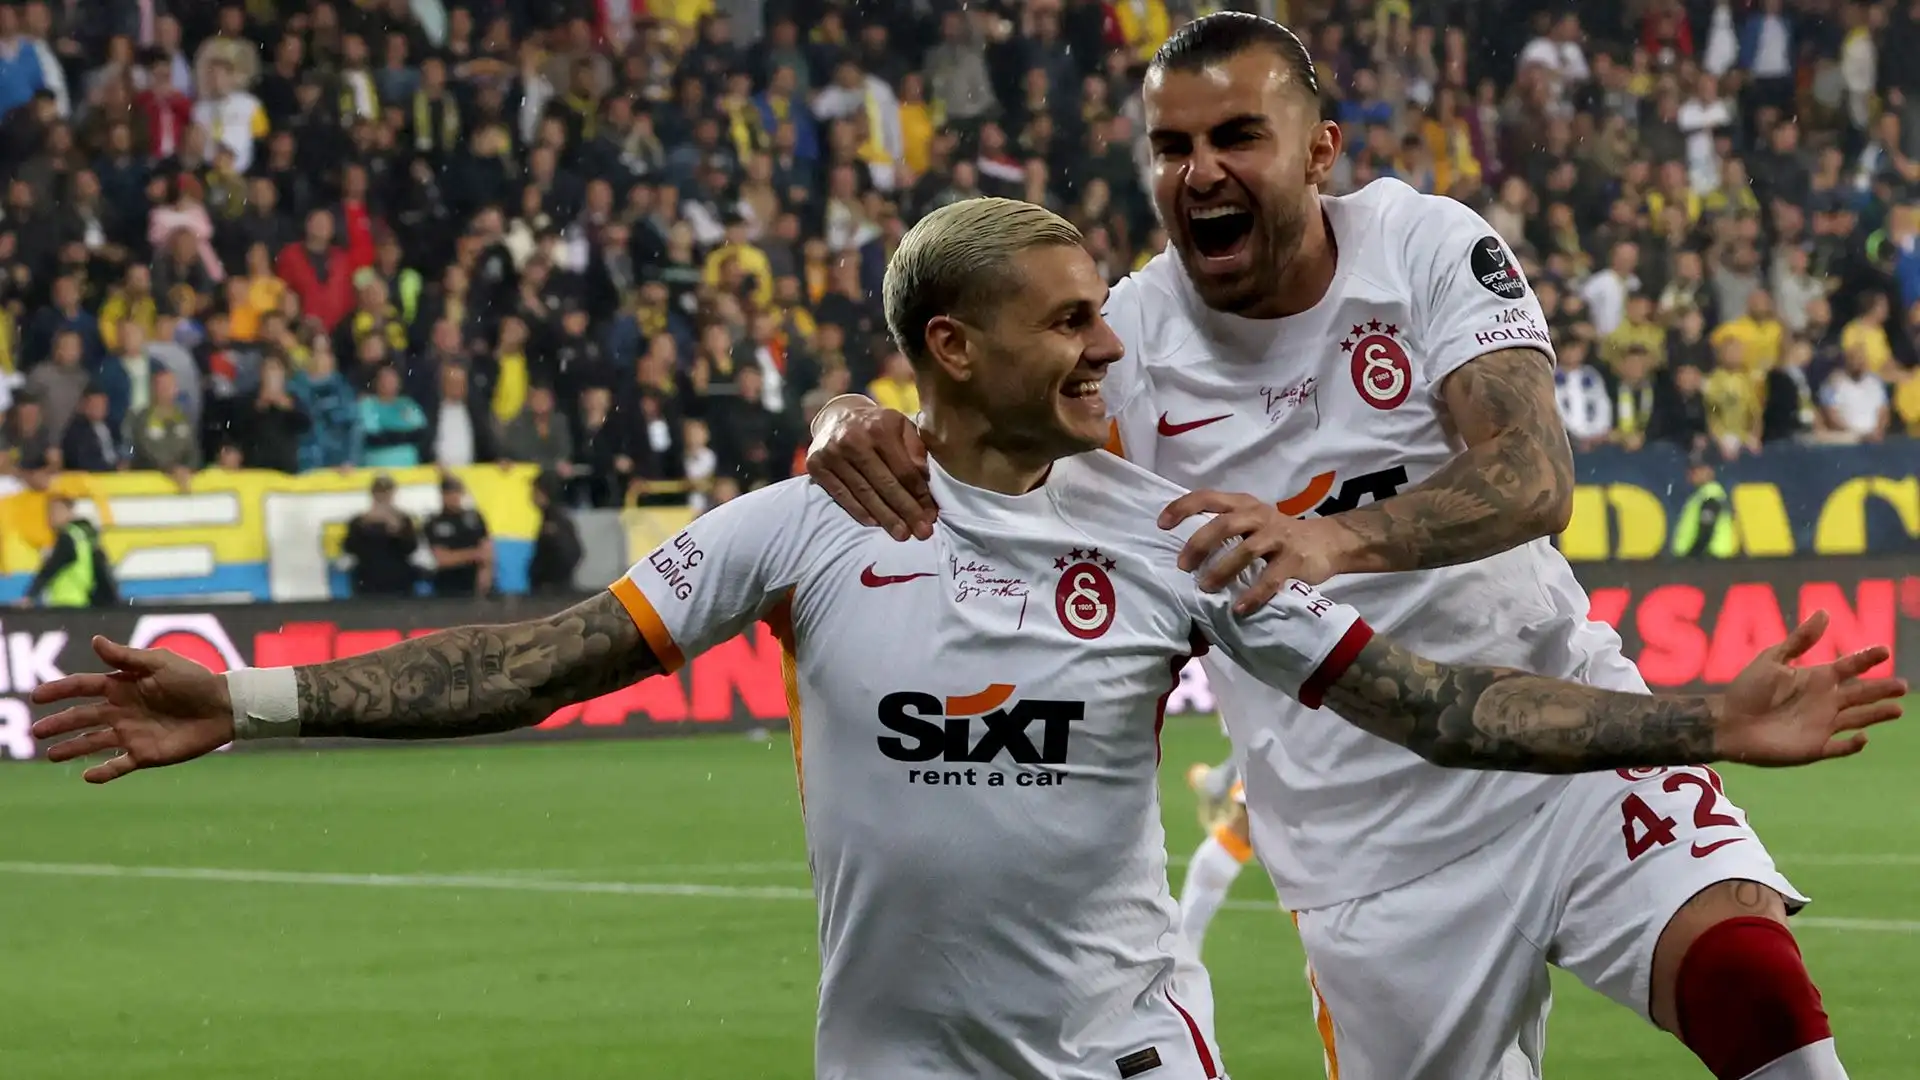 Il Galatasaray ha 5 punti di vantaggio sul Fenerbahce, che non può più raggiungerlo